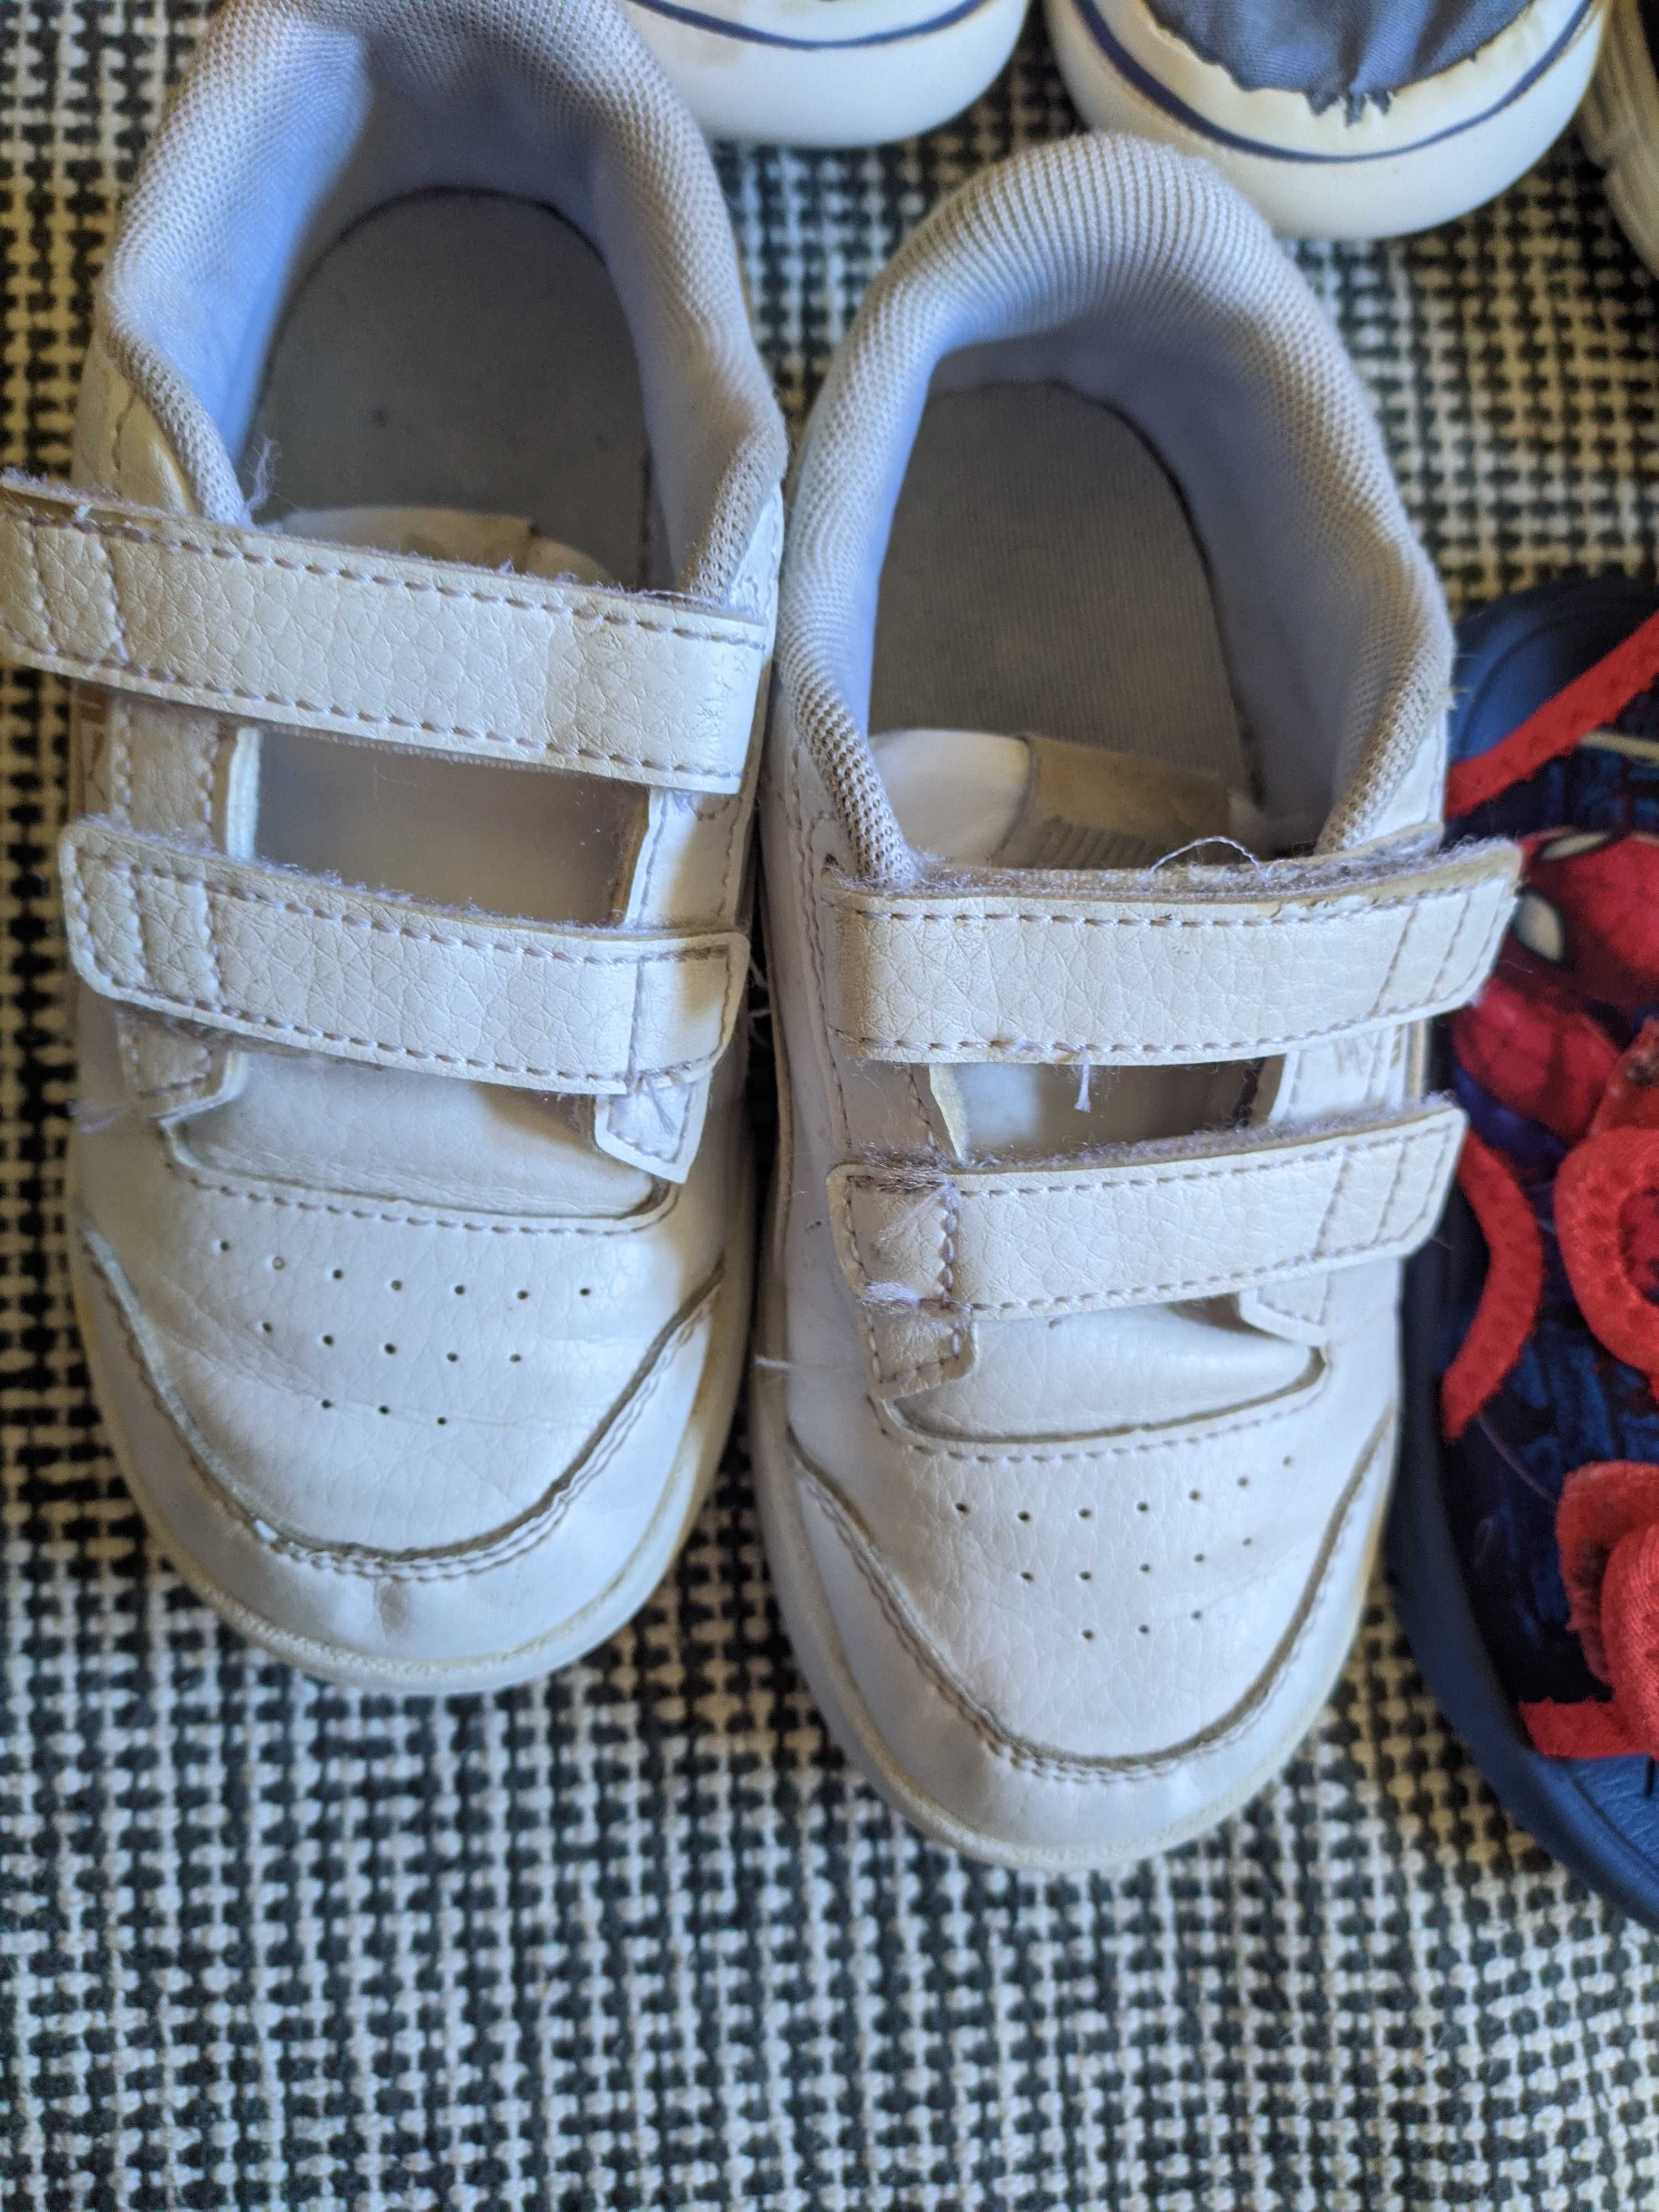 5 sapatos criança | ténis, pantufas e sandálias - valor inclui todos